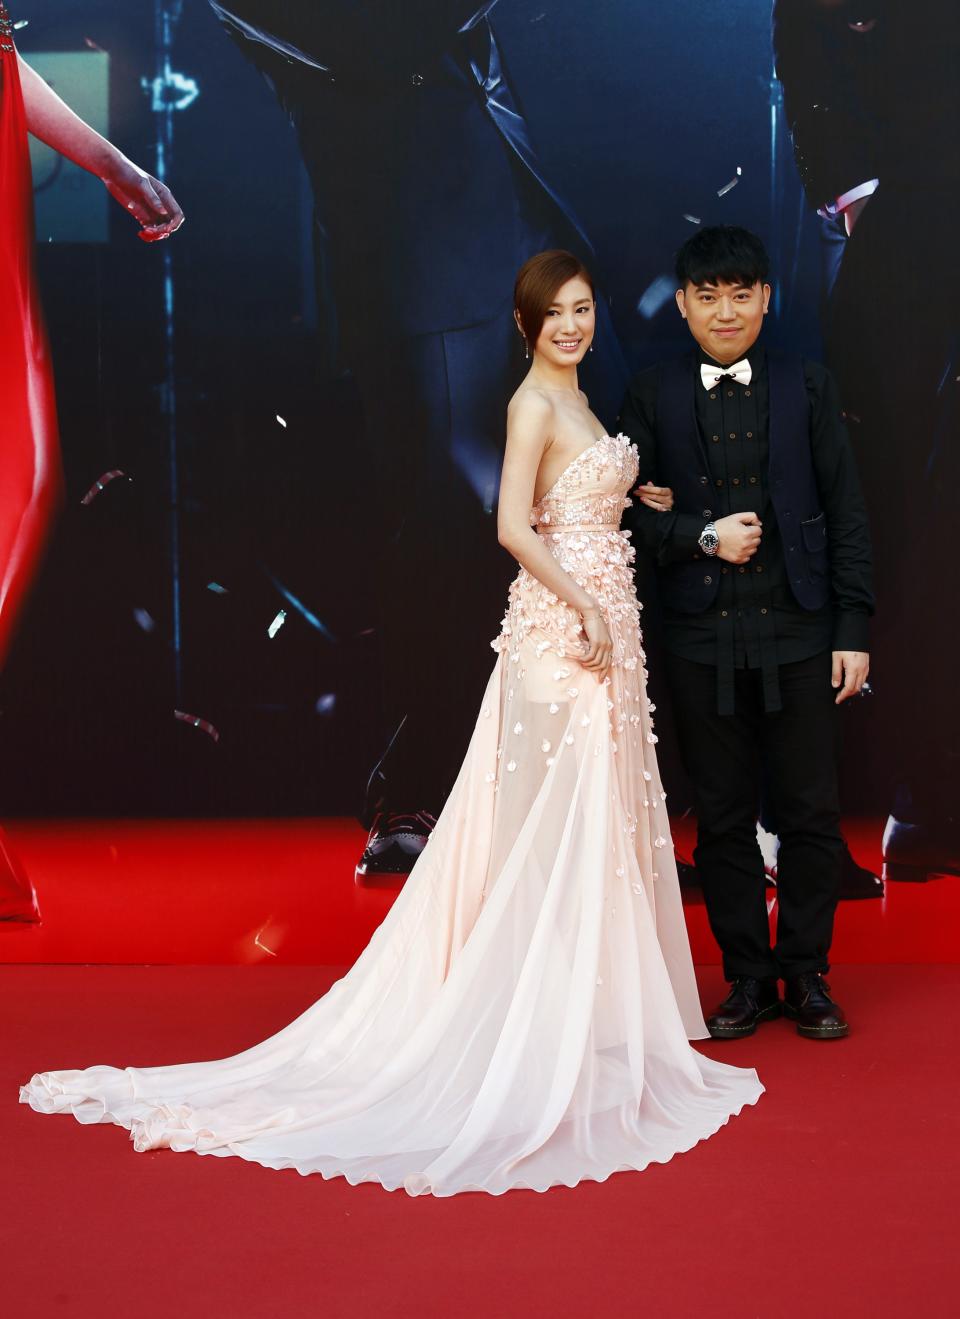 Chiang poses with director Kong on red carpet at Hong Kong Film Awards